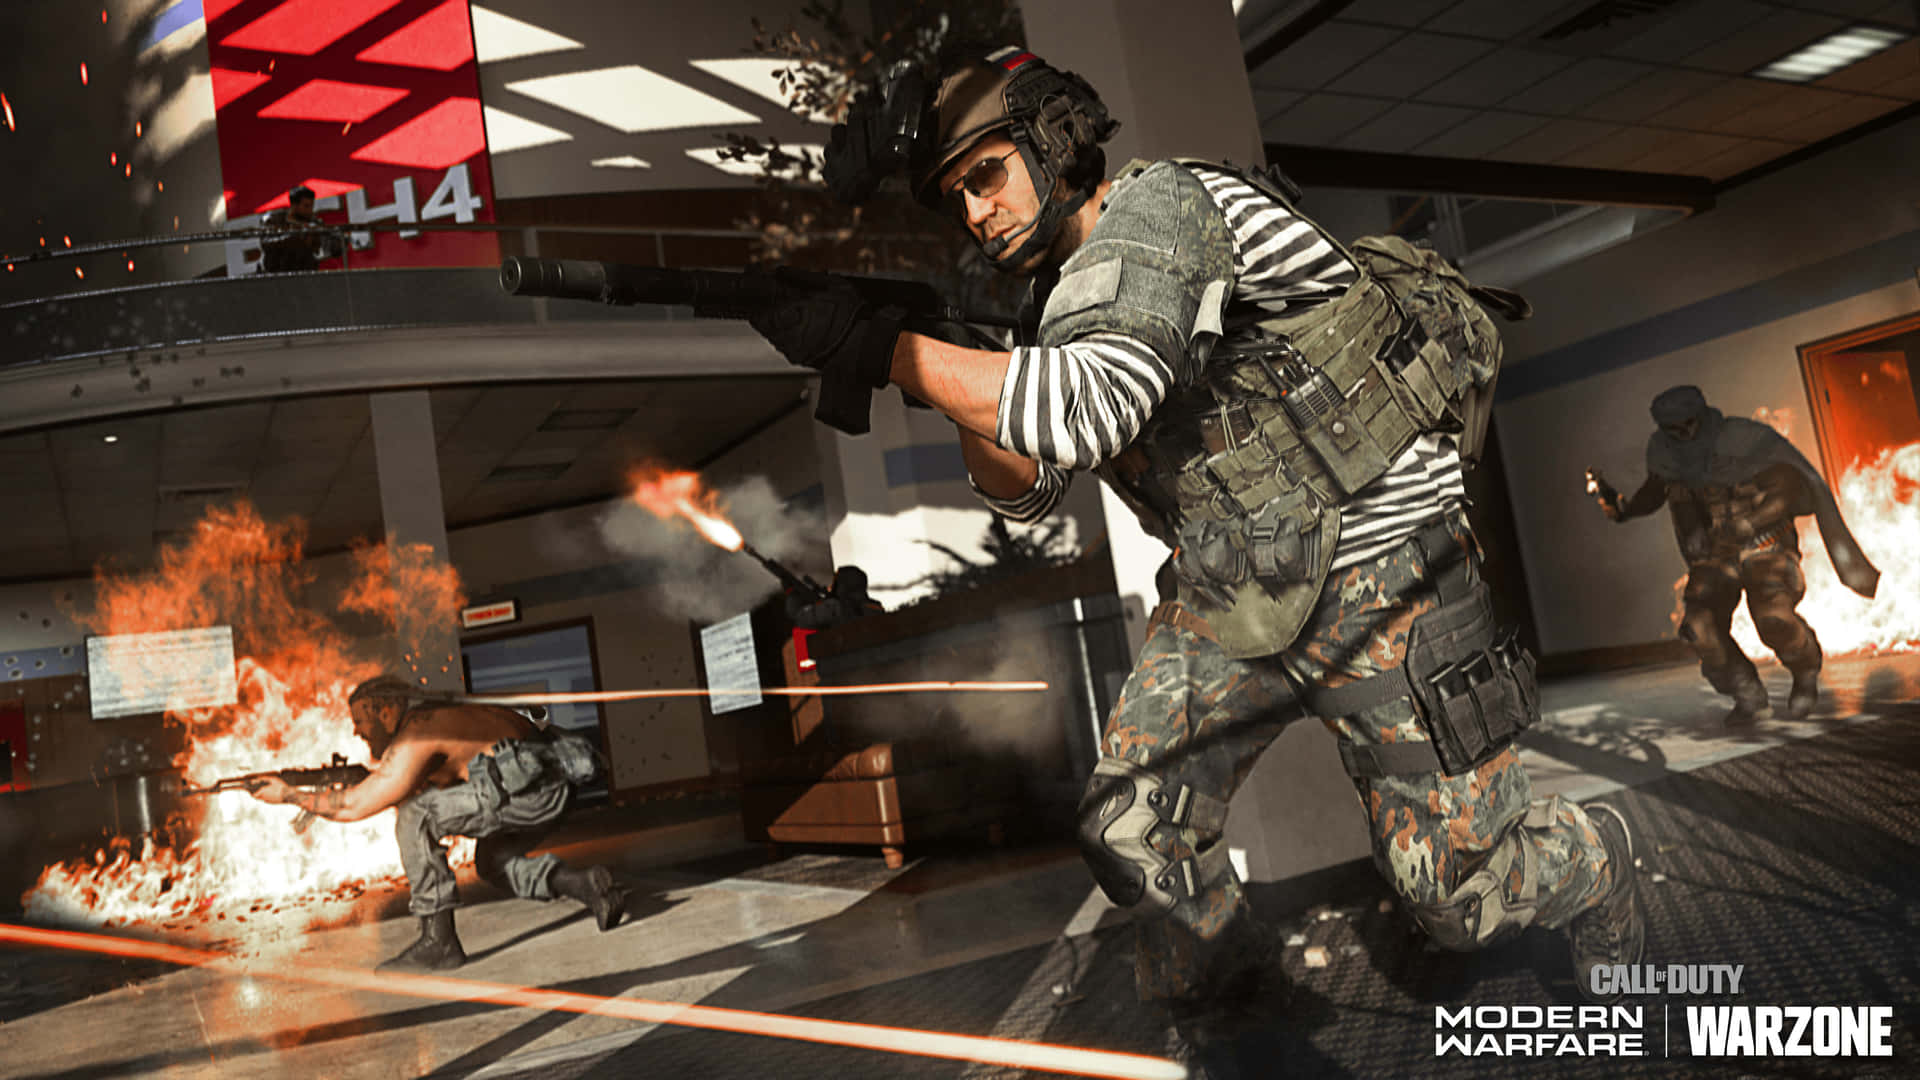 Preparatia Combattere In Hd Con Call Of Duty Modern Warfare